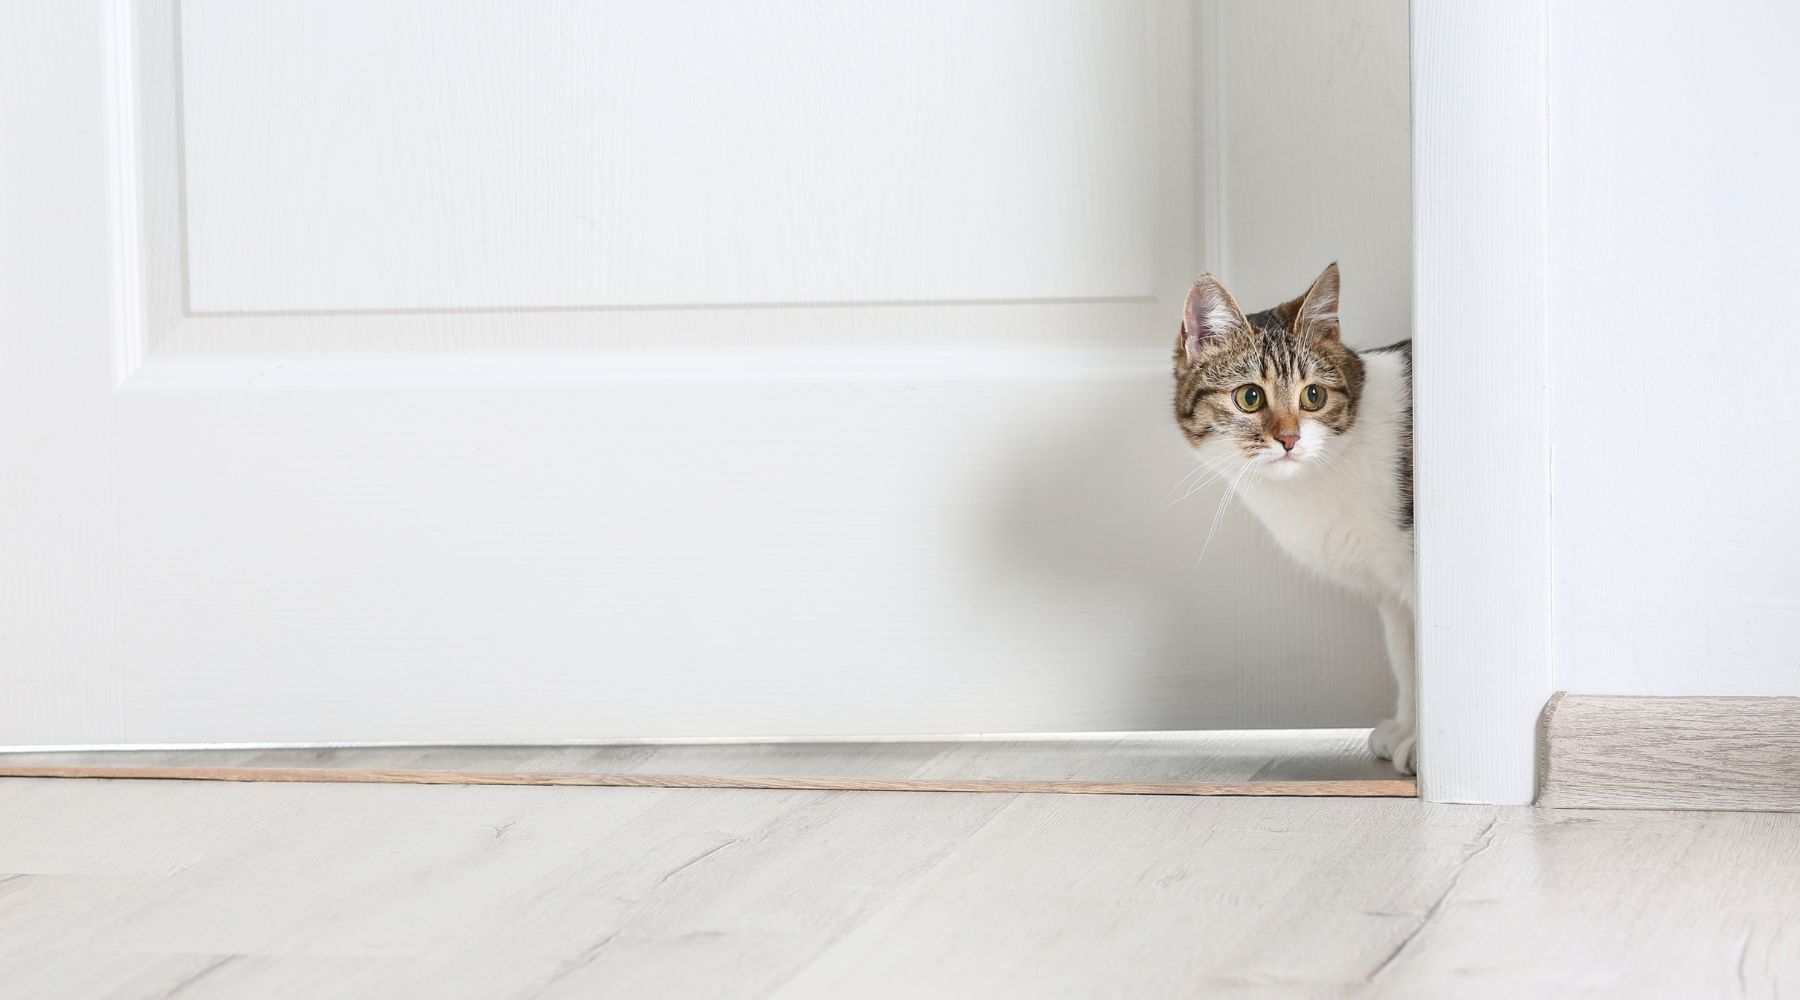 Cat looking through doorway